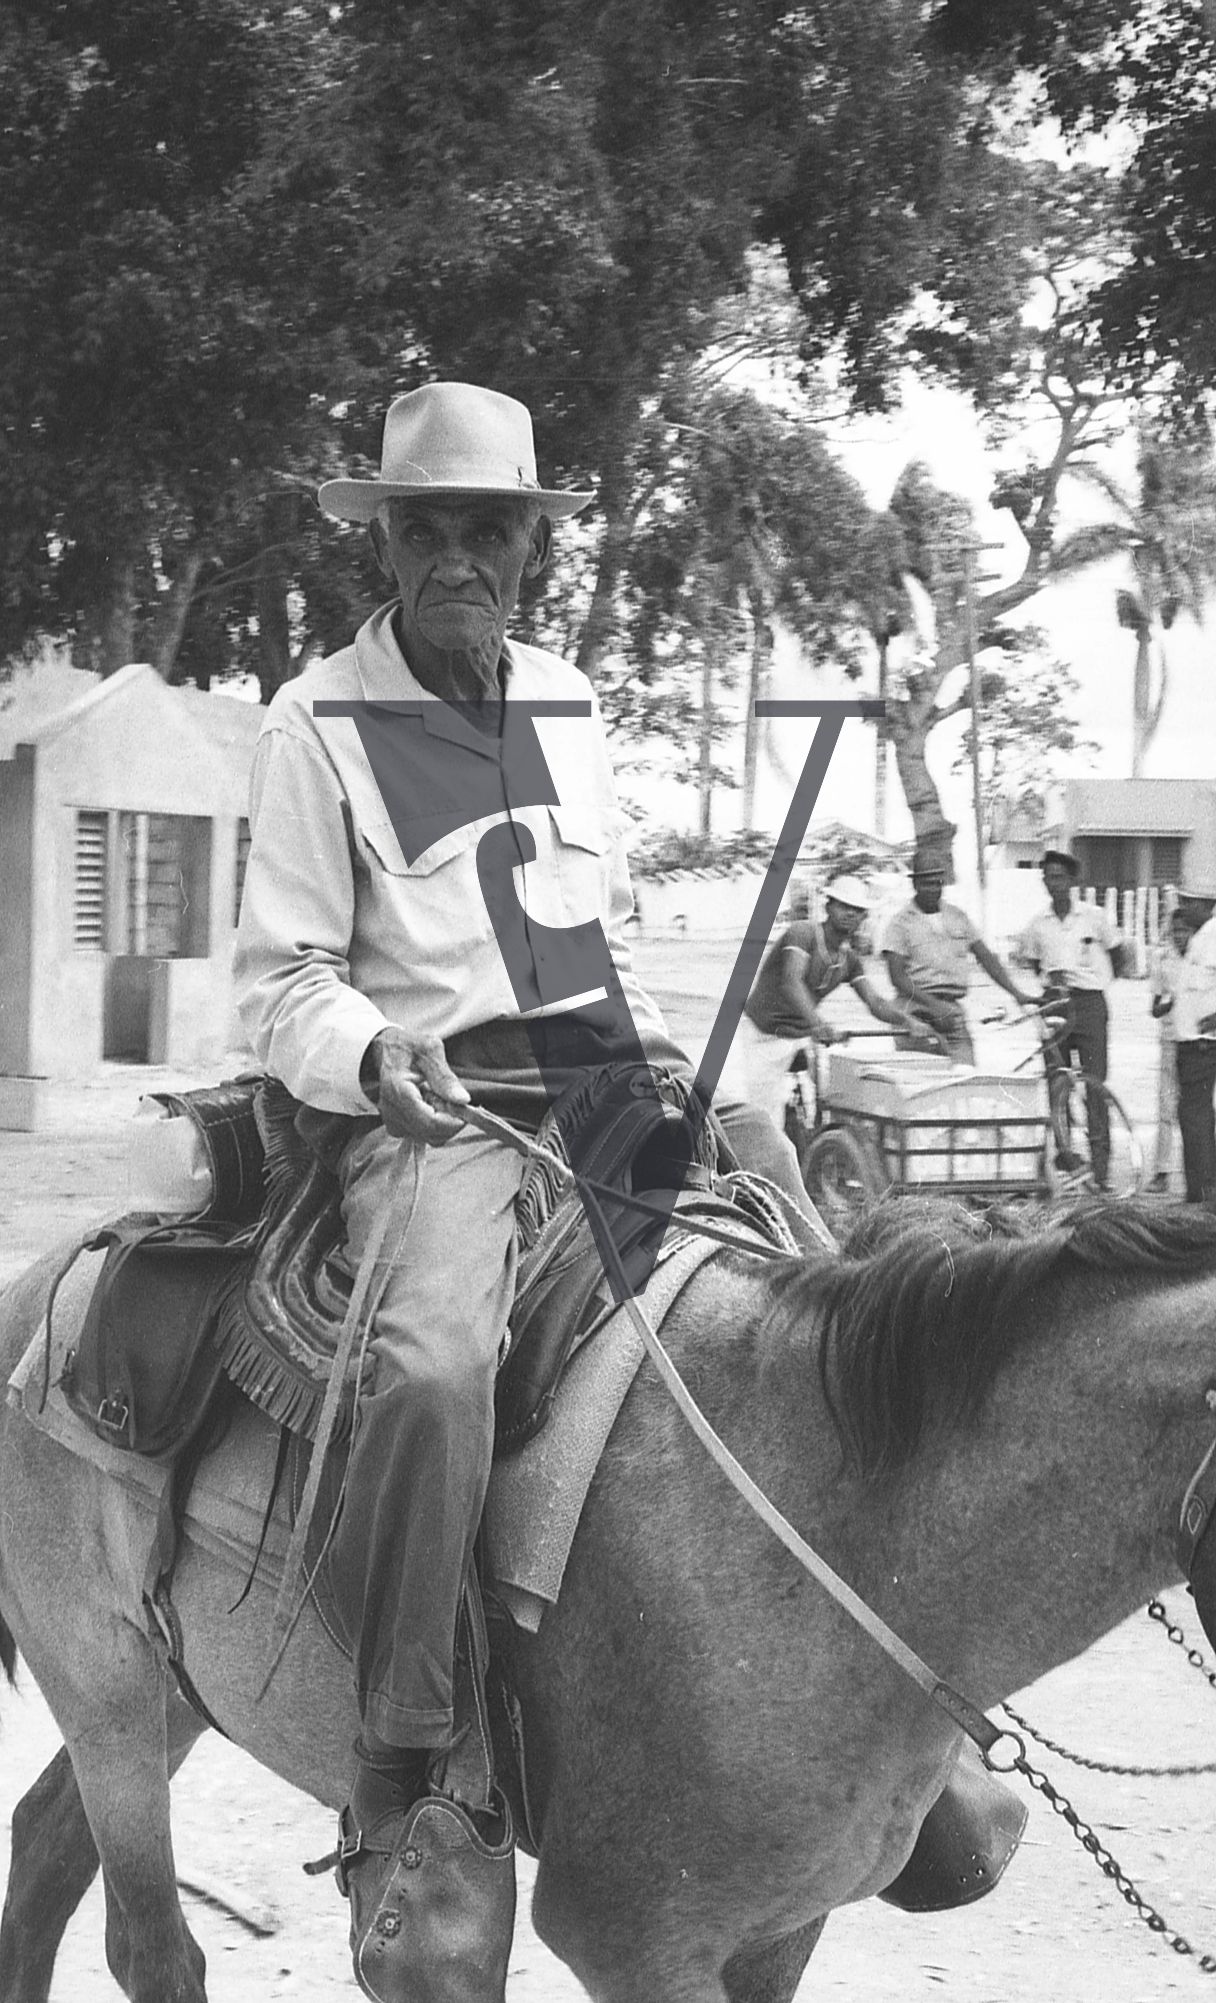 Dominican Republic, portrait, elderly man on donkey.